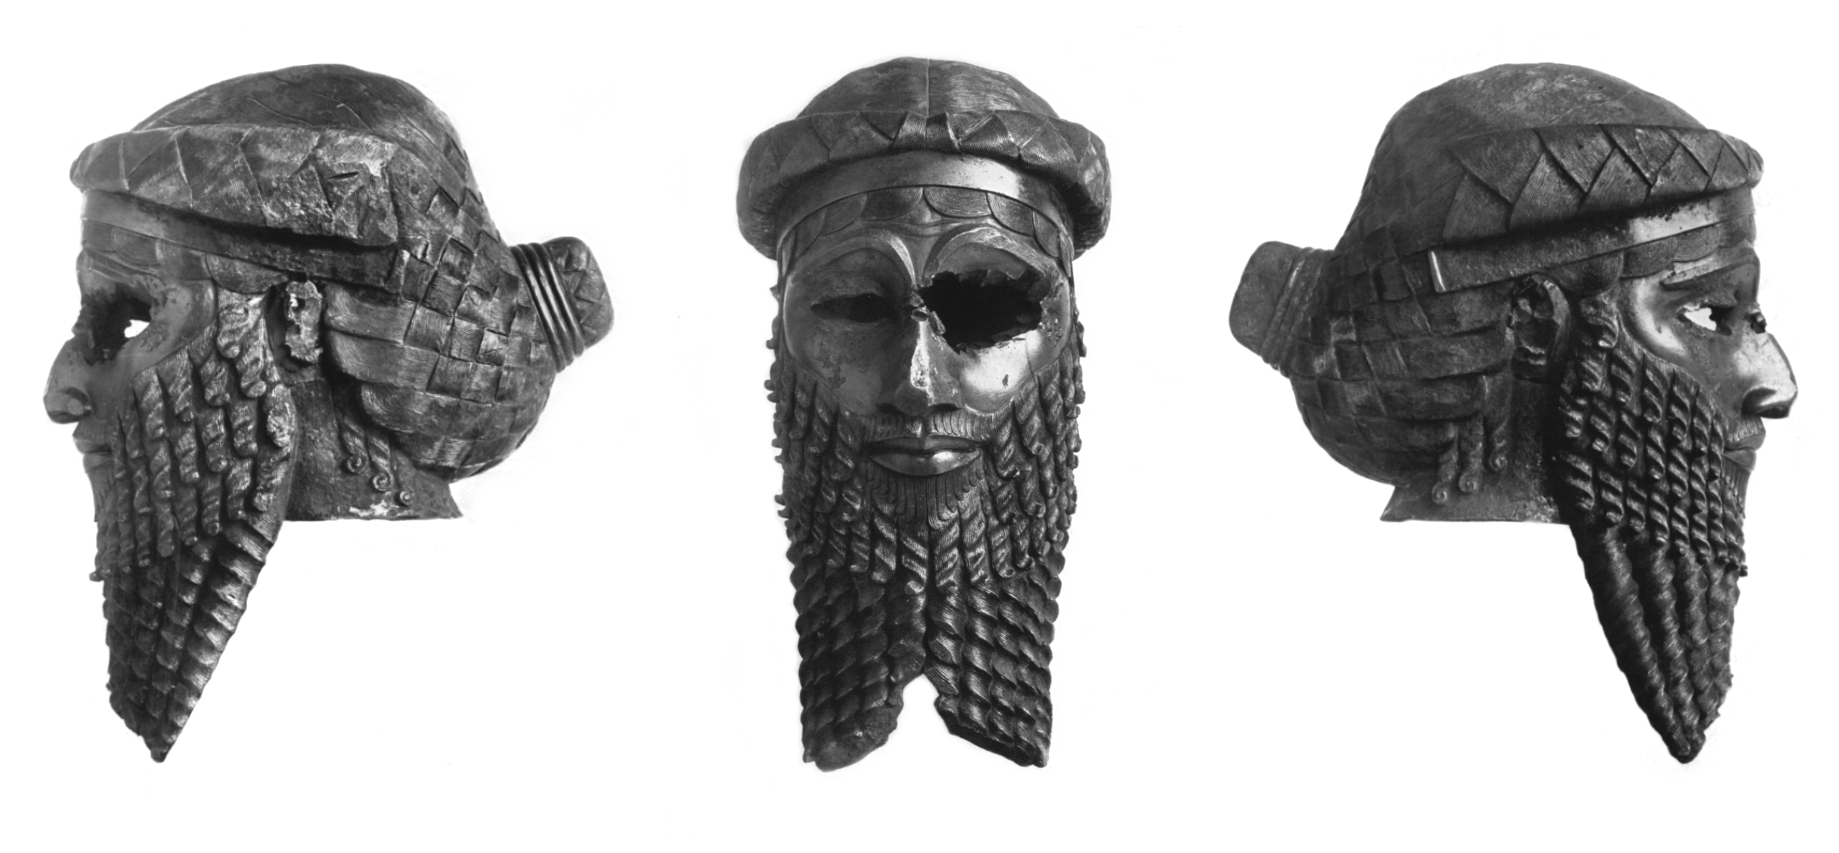 サルゴン王とみられるブロンズ像の頭部（イラク国立博物館収蔵）